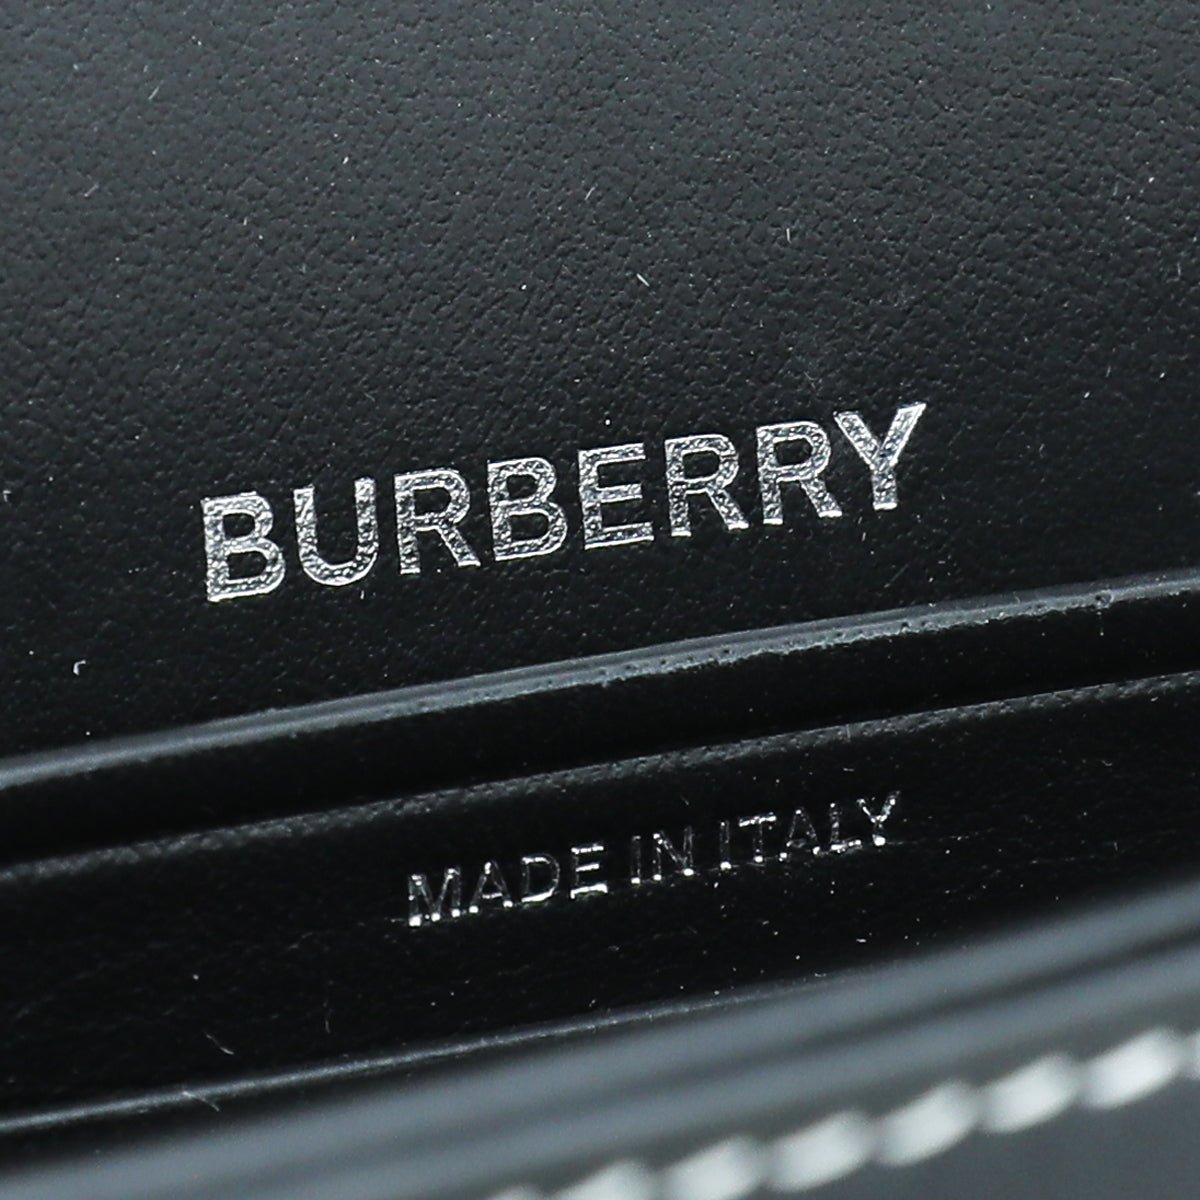 Burberry - Burberry Blue Graphic Denim Olympia Bag | The Closet